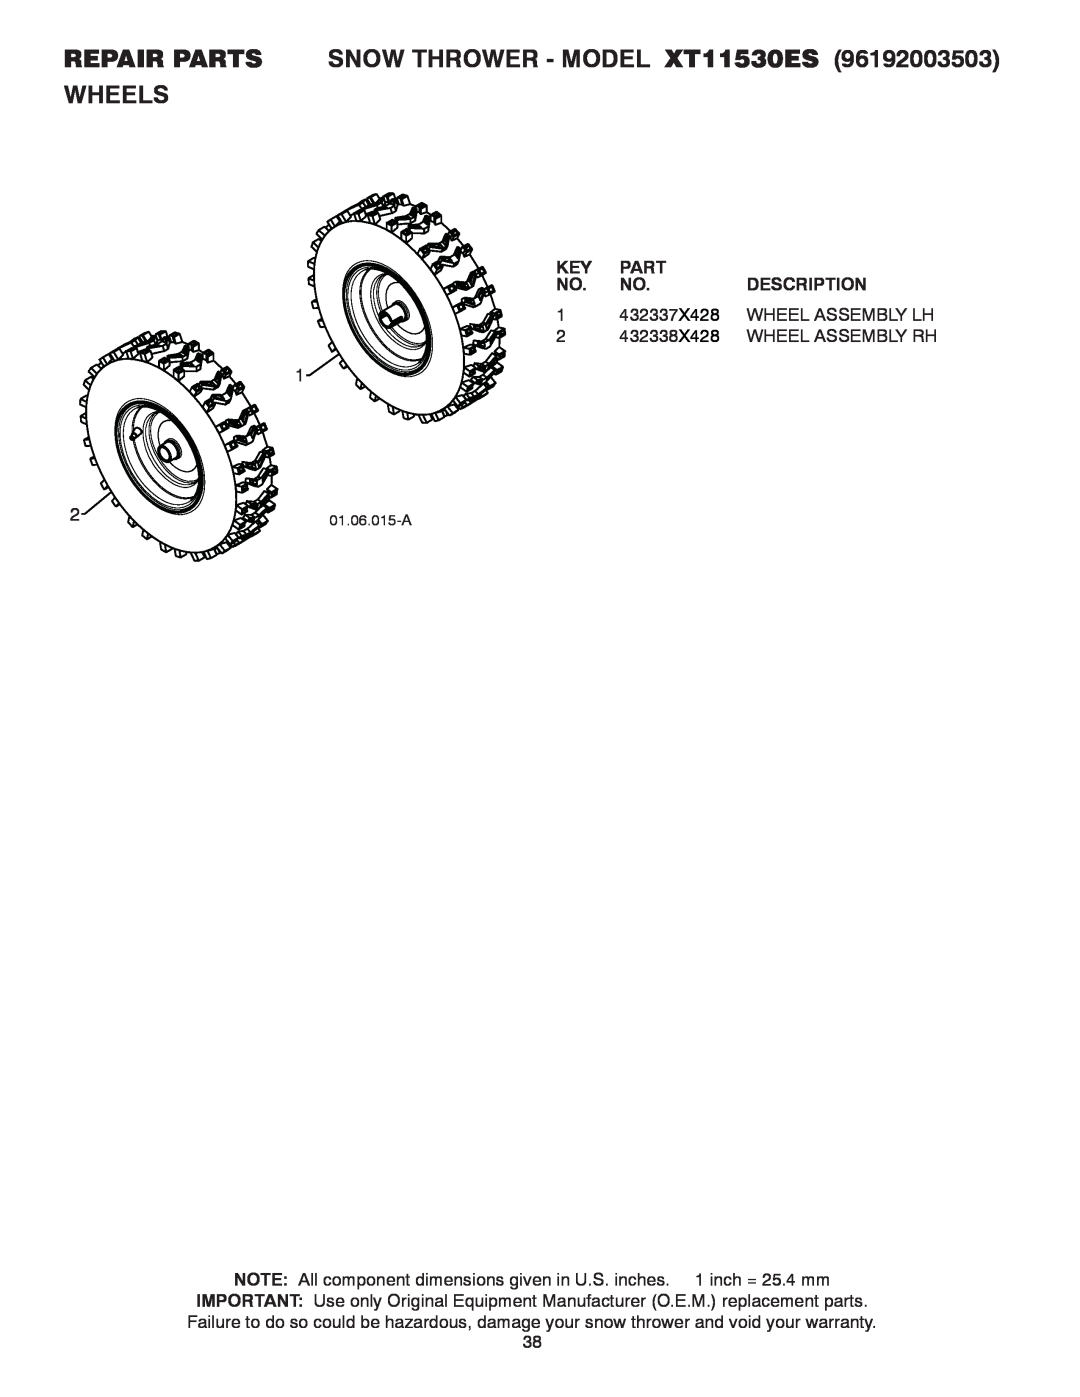 Poulan 437970 REPAIR PARTS SNOW THROWER - MODEL XT11530ES, Wheels, Part, Description, 432337X428, Wheel Assembly Lh 